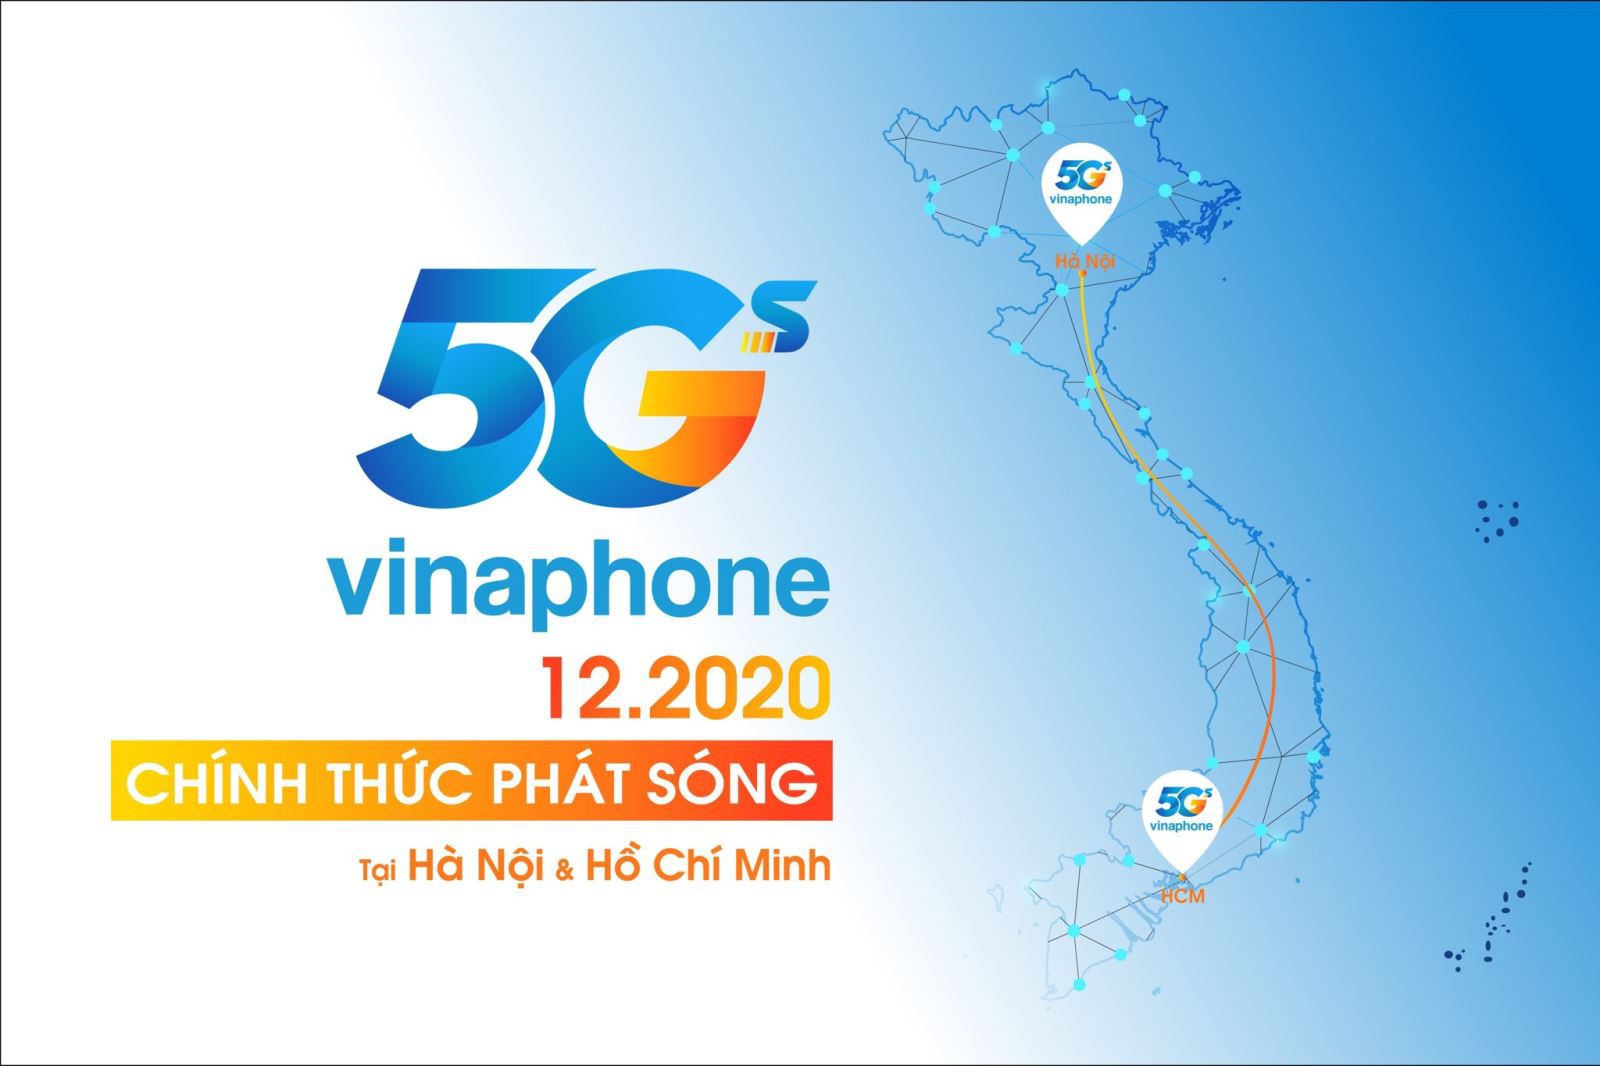 Bao giờ mạng 5G sẽ có mặt tại Việt Nam?  Làm thế nào để sử dụng 5G?  5